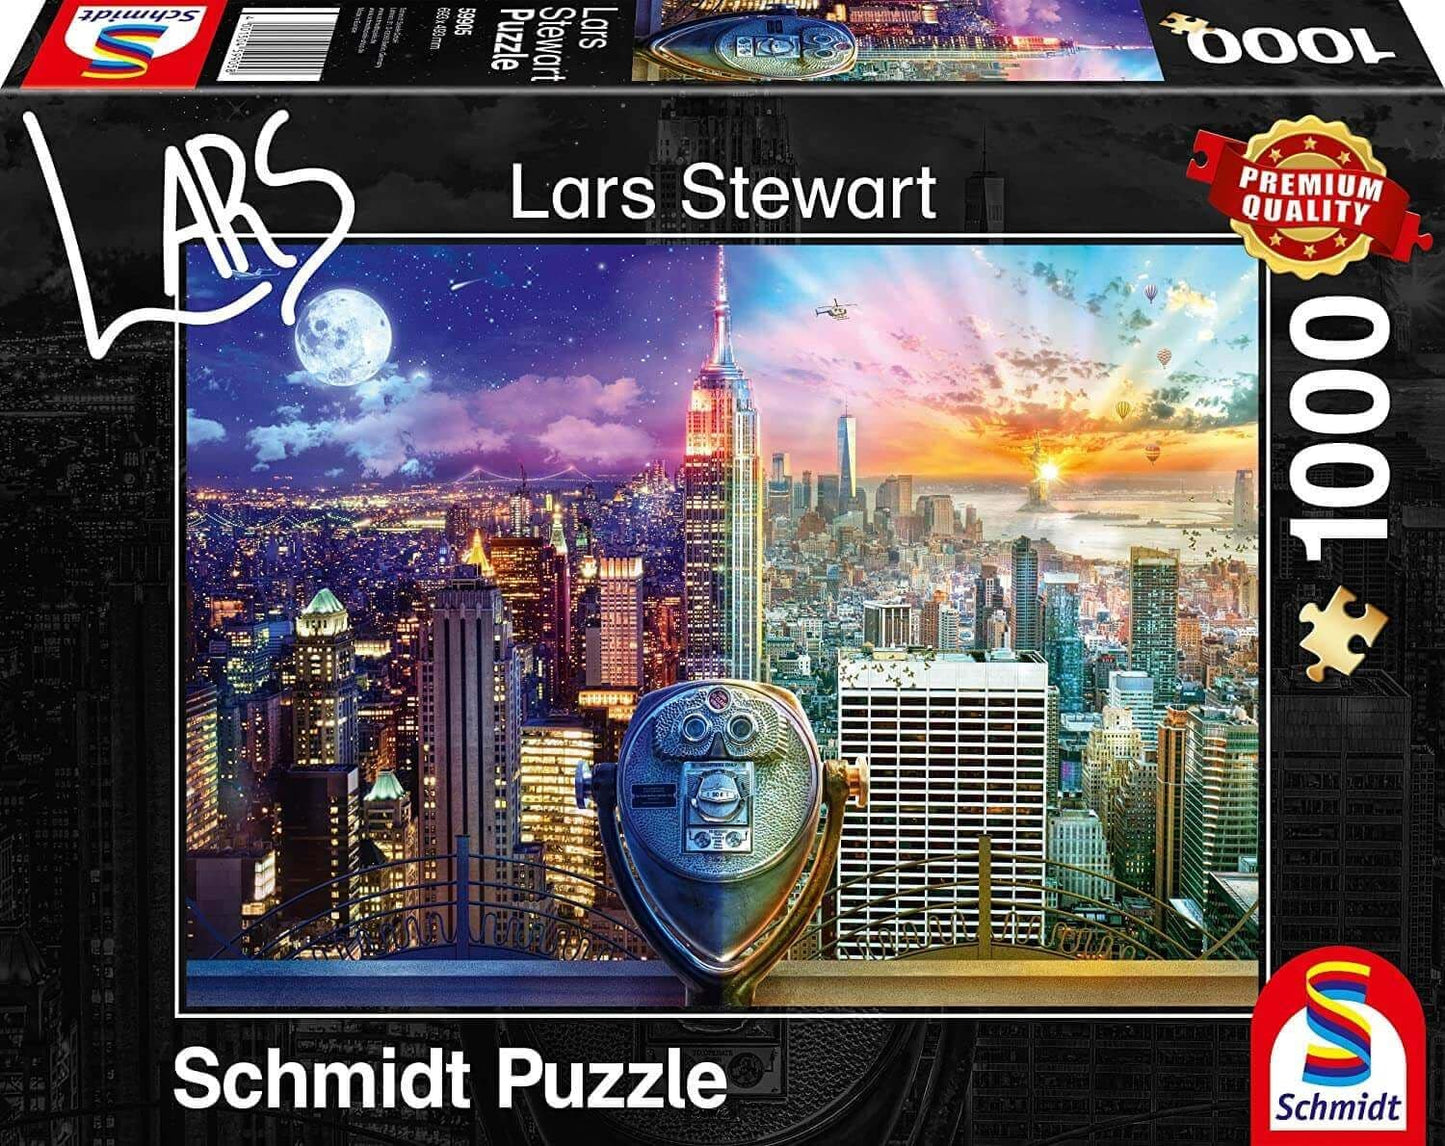 Schmidt - New York Night & Day - Lars Stewart - 1000 Piece Jigsaw Puzzle